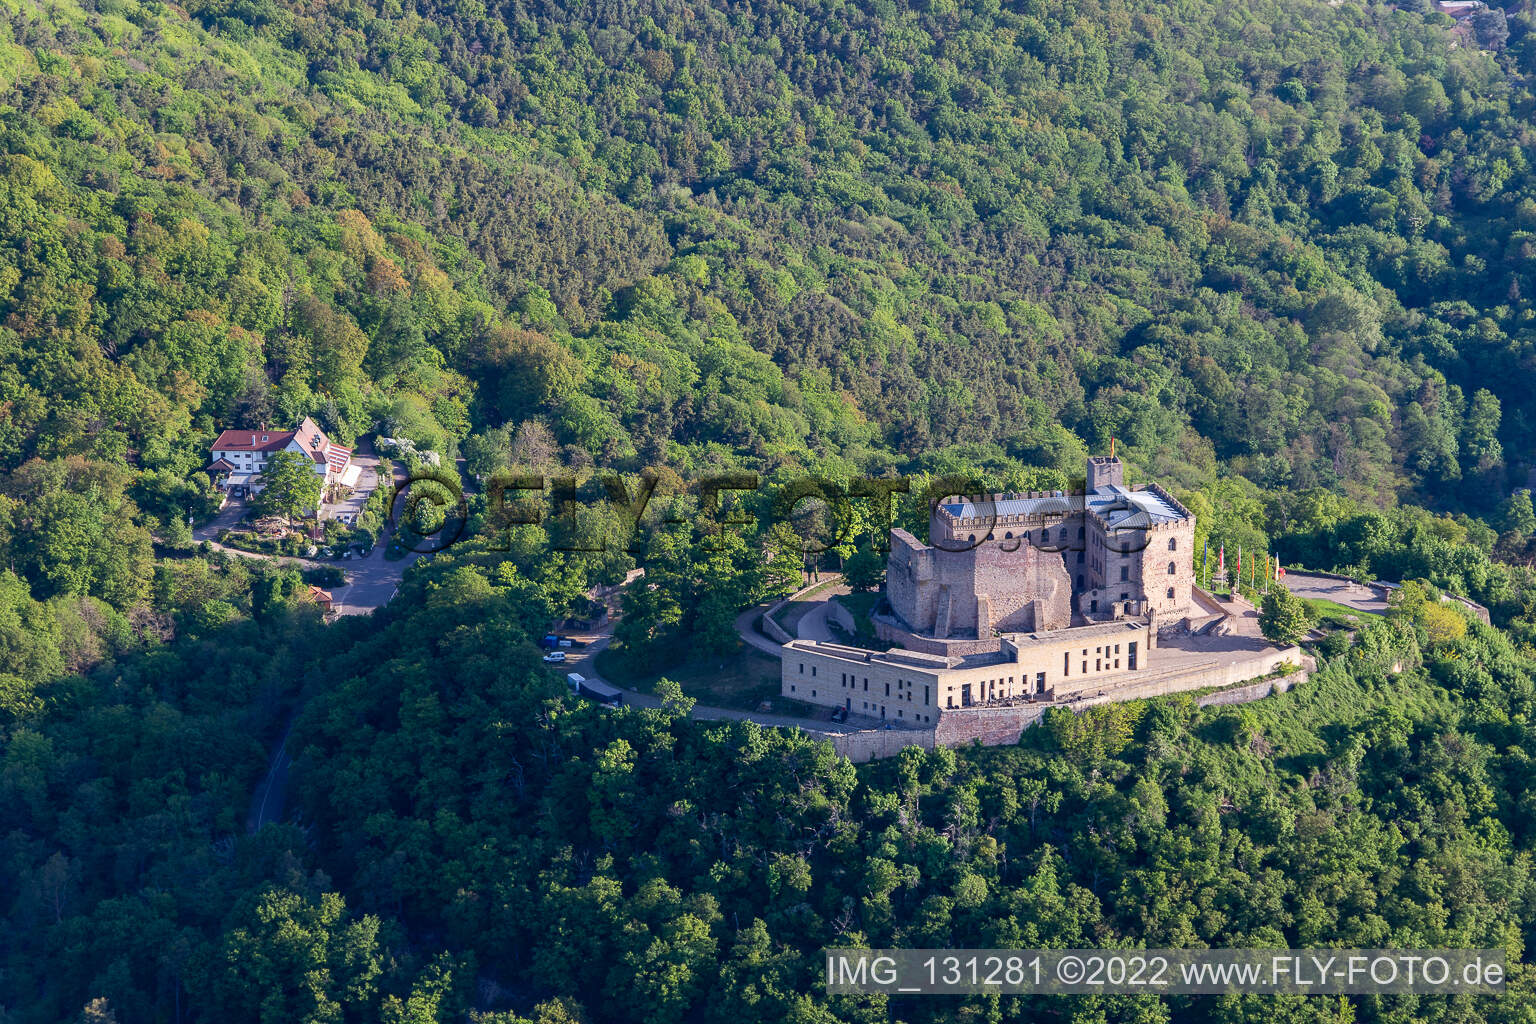 Château de Hambach à le quartier Diedesfeld in Neustadt an der Weinstraße dans le département Rhénanie-Palatinat, Allemagne du point de vue du drone